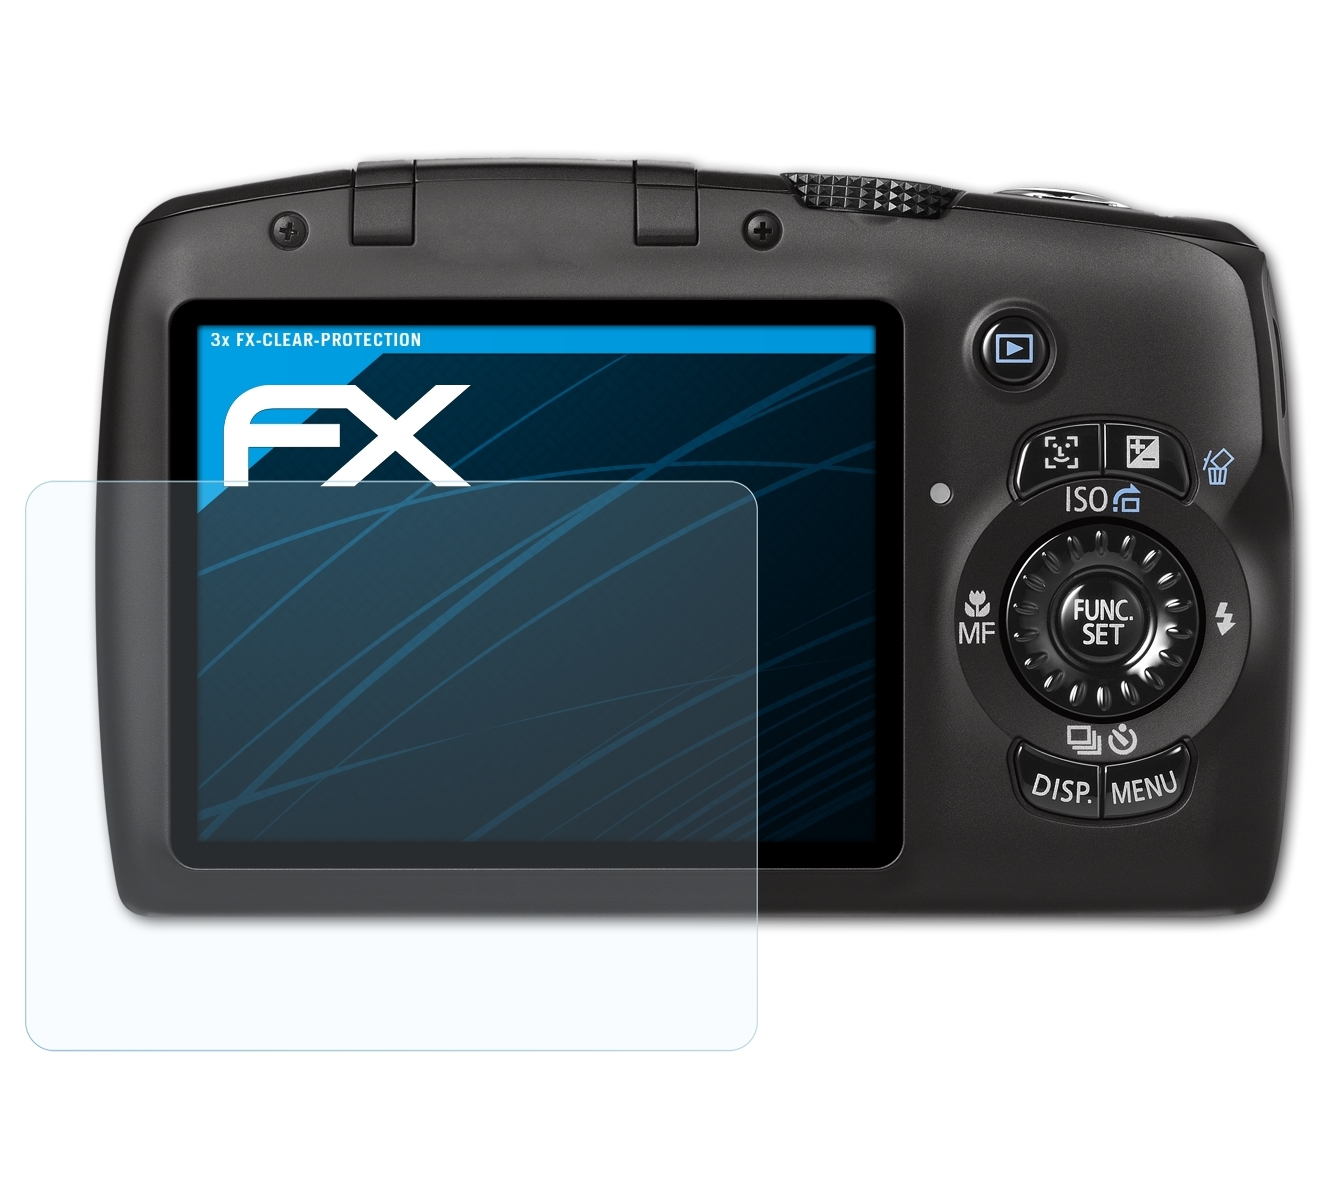 ATFOLIX 3x FX-Clear SX120 Displayschutz(für IS) Canon PowerShot